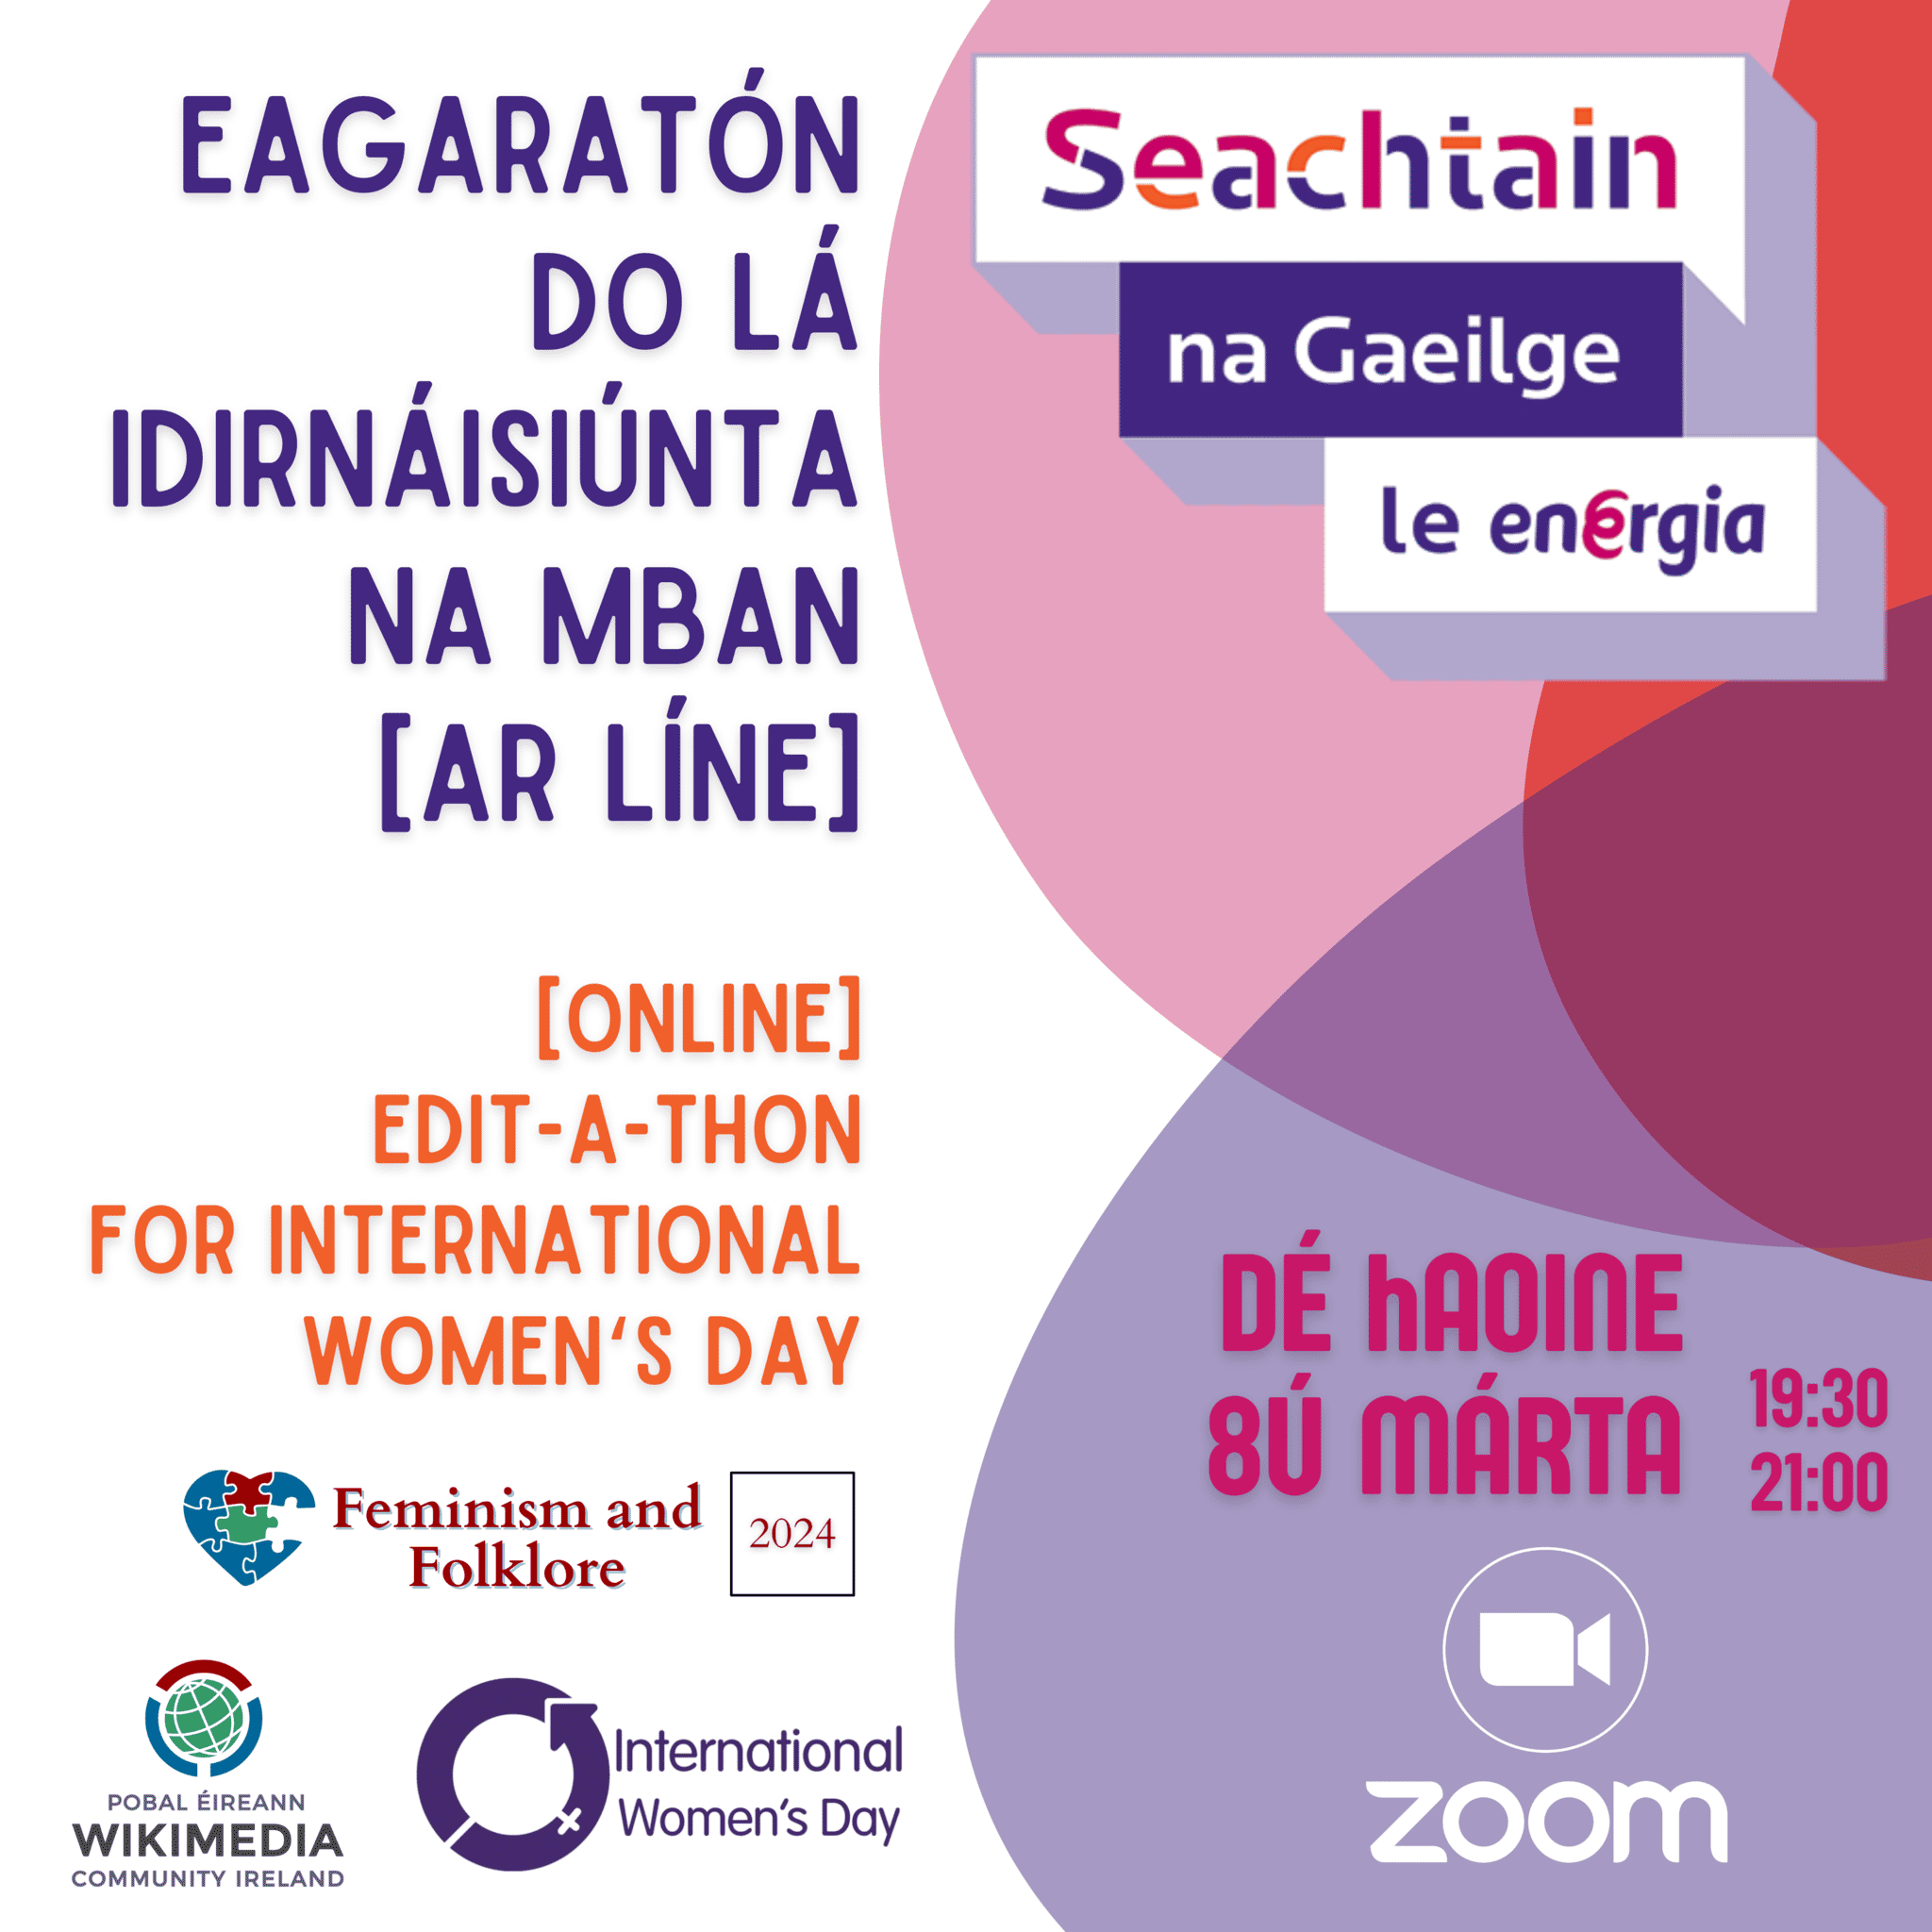 Eagaratón do Lá Idirnaisiúntan na mBan (Ar Líne) / Edit-a-thon for International Women’s Day (Online)